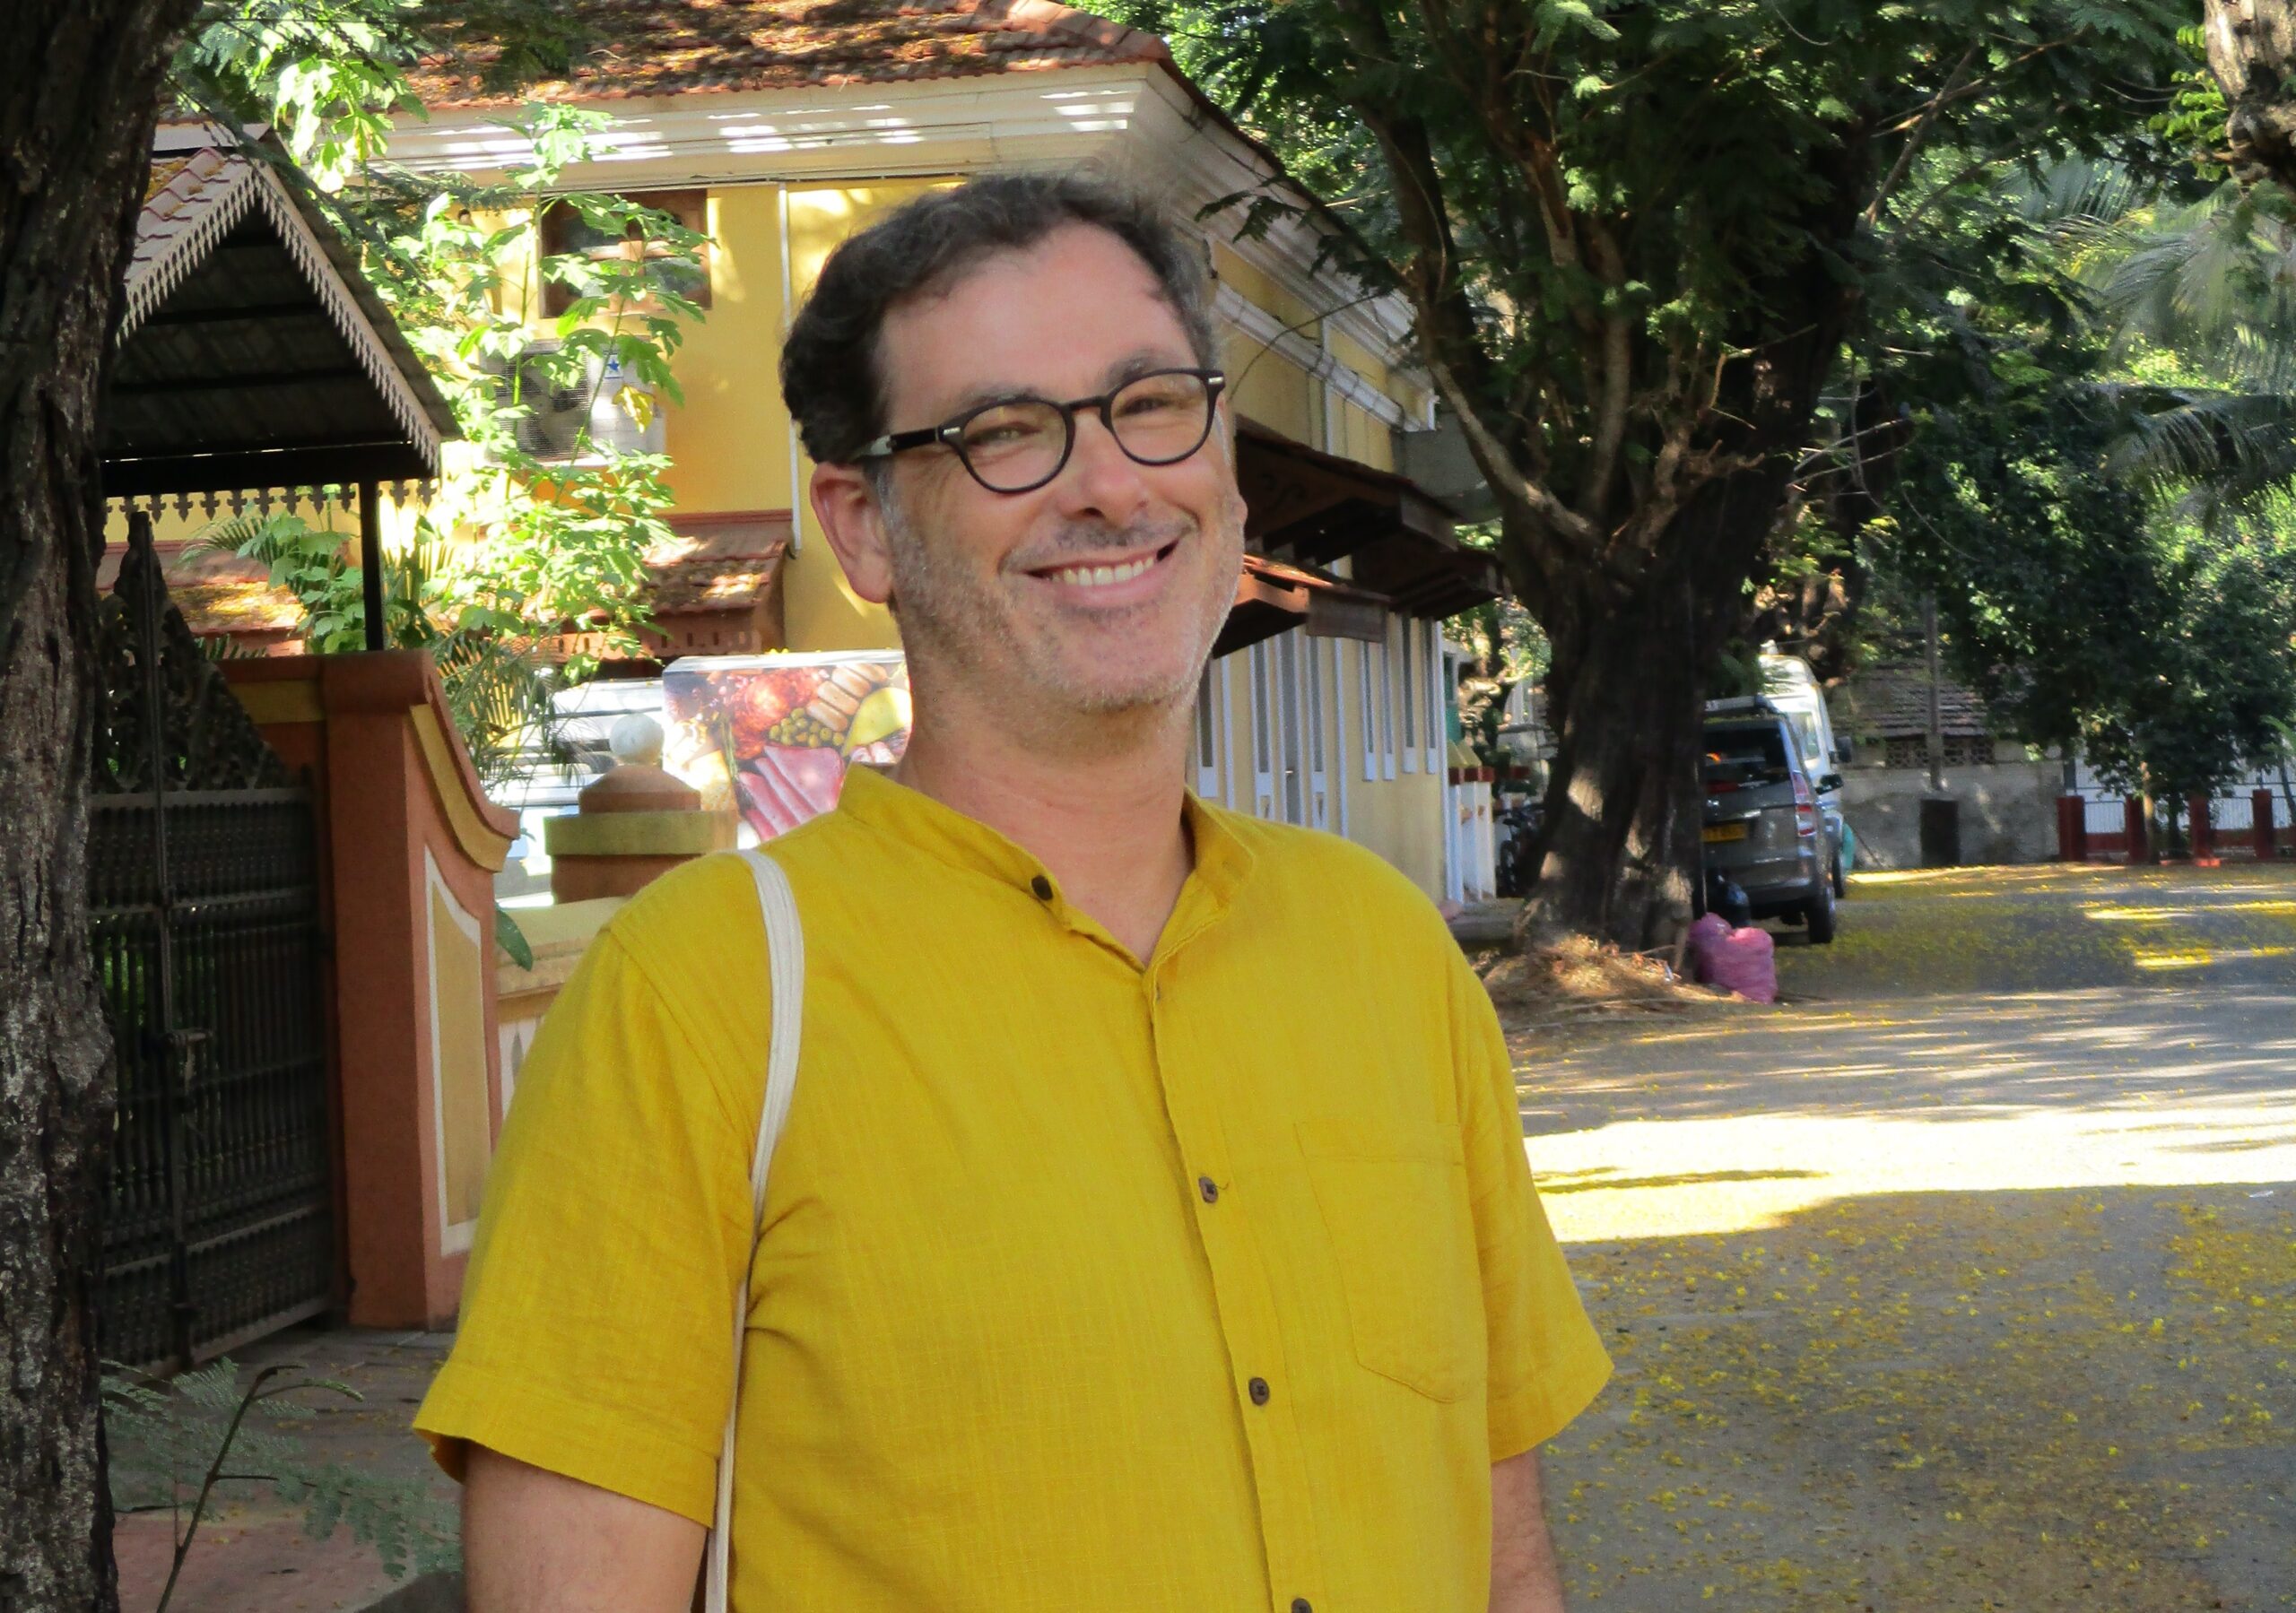 Pedro Pombo, antropólogo: “Macau torna-se visível em apontamentos”